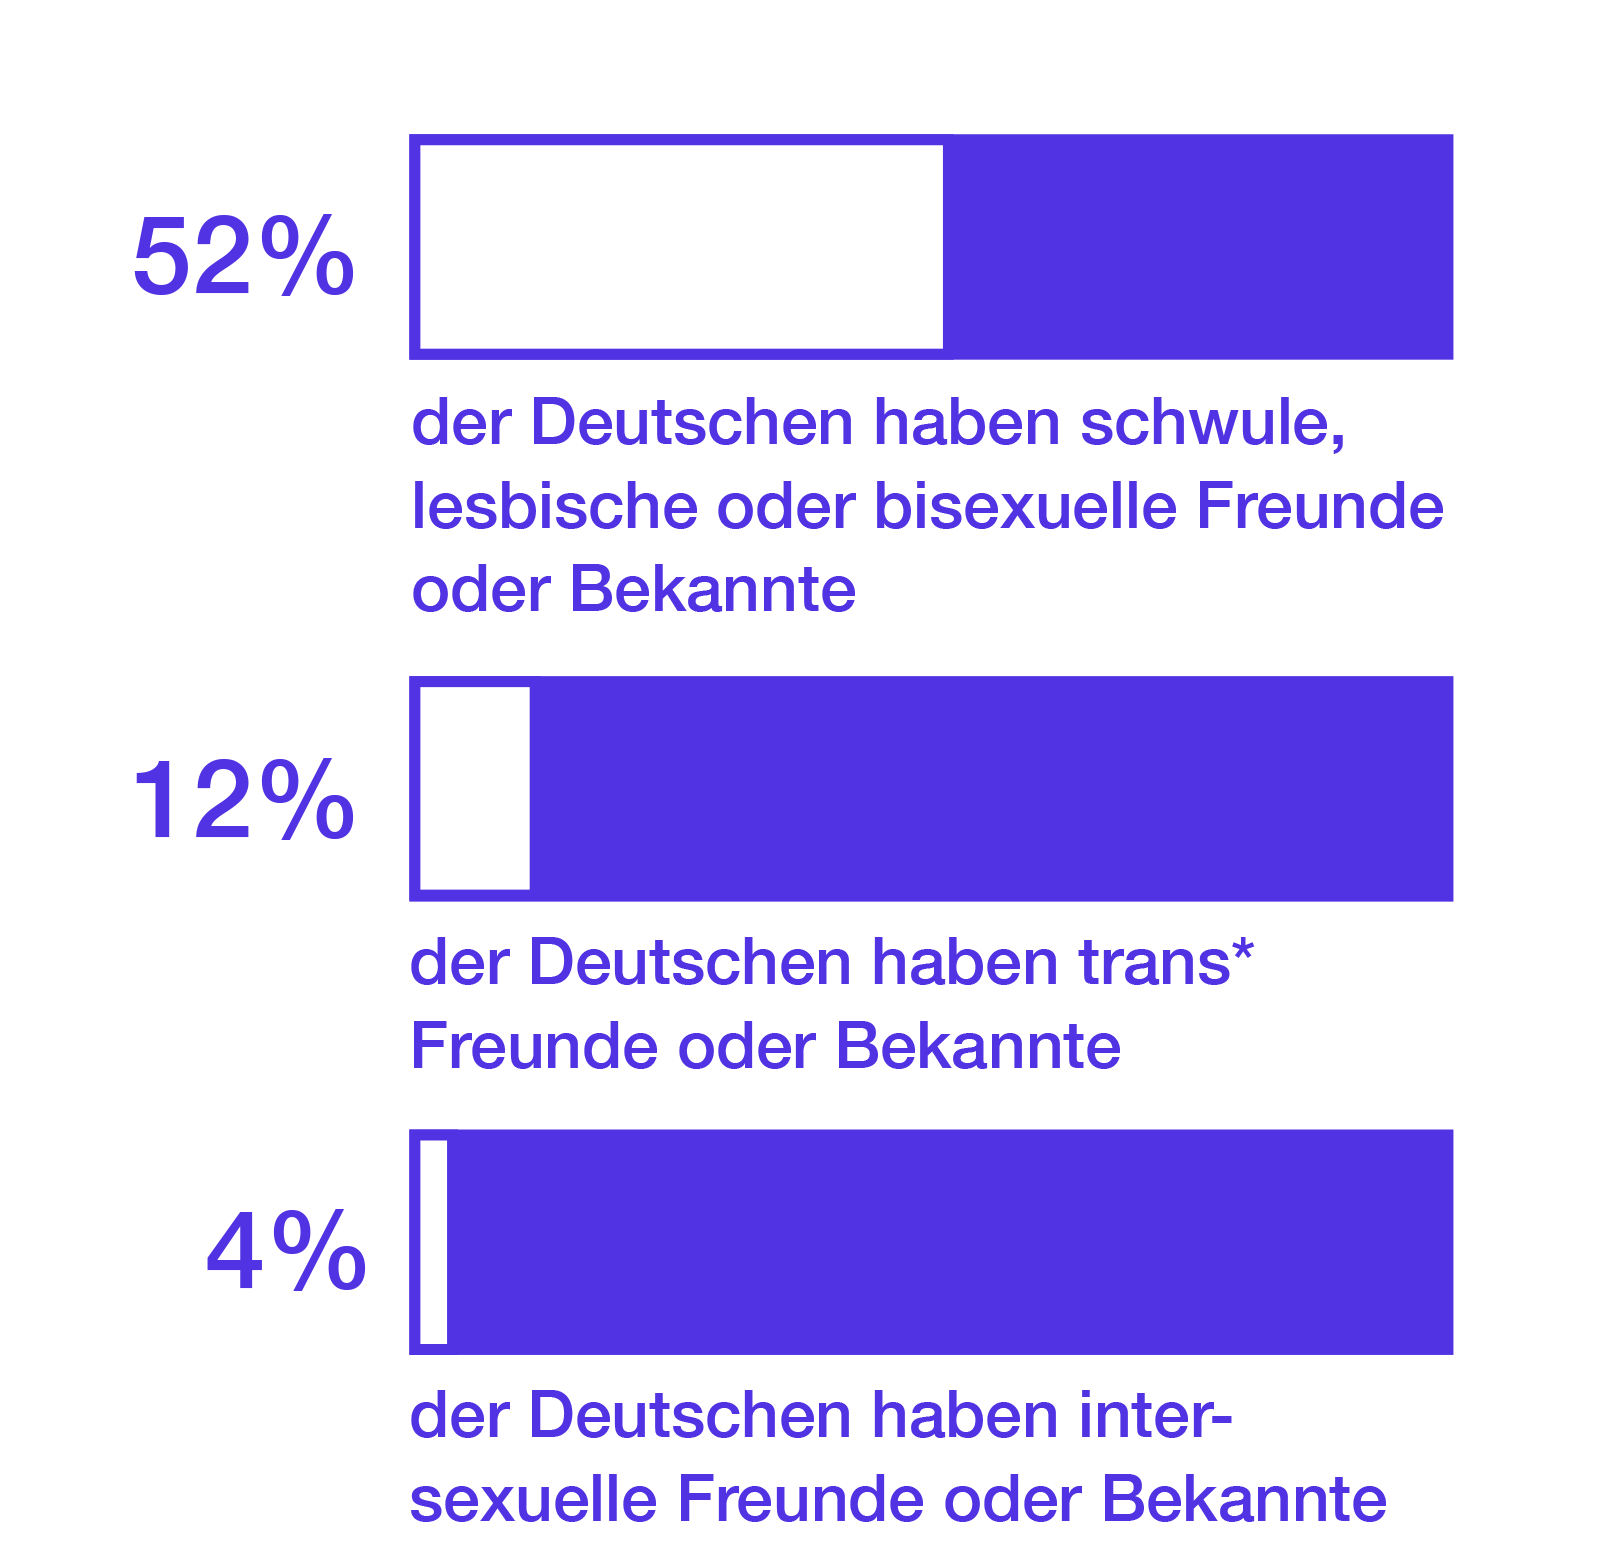 52% der Deutschen haben schwule, lesbische oder bisexuelle Freund*innen oder Bekannte. 12% der Deutschen haben trans* Freund*innen oder Bekannte. 4% der Deutschen haben intergeschlechtliche Freund*innen oder Bekannte.